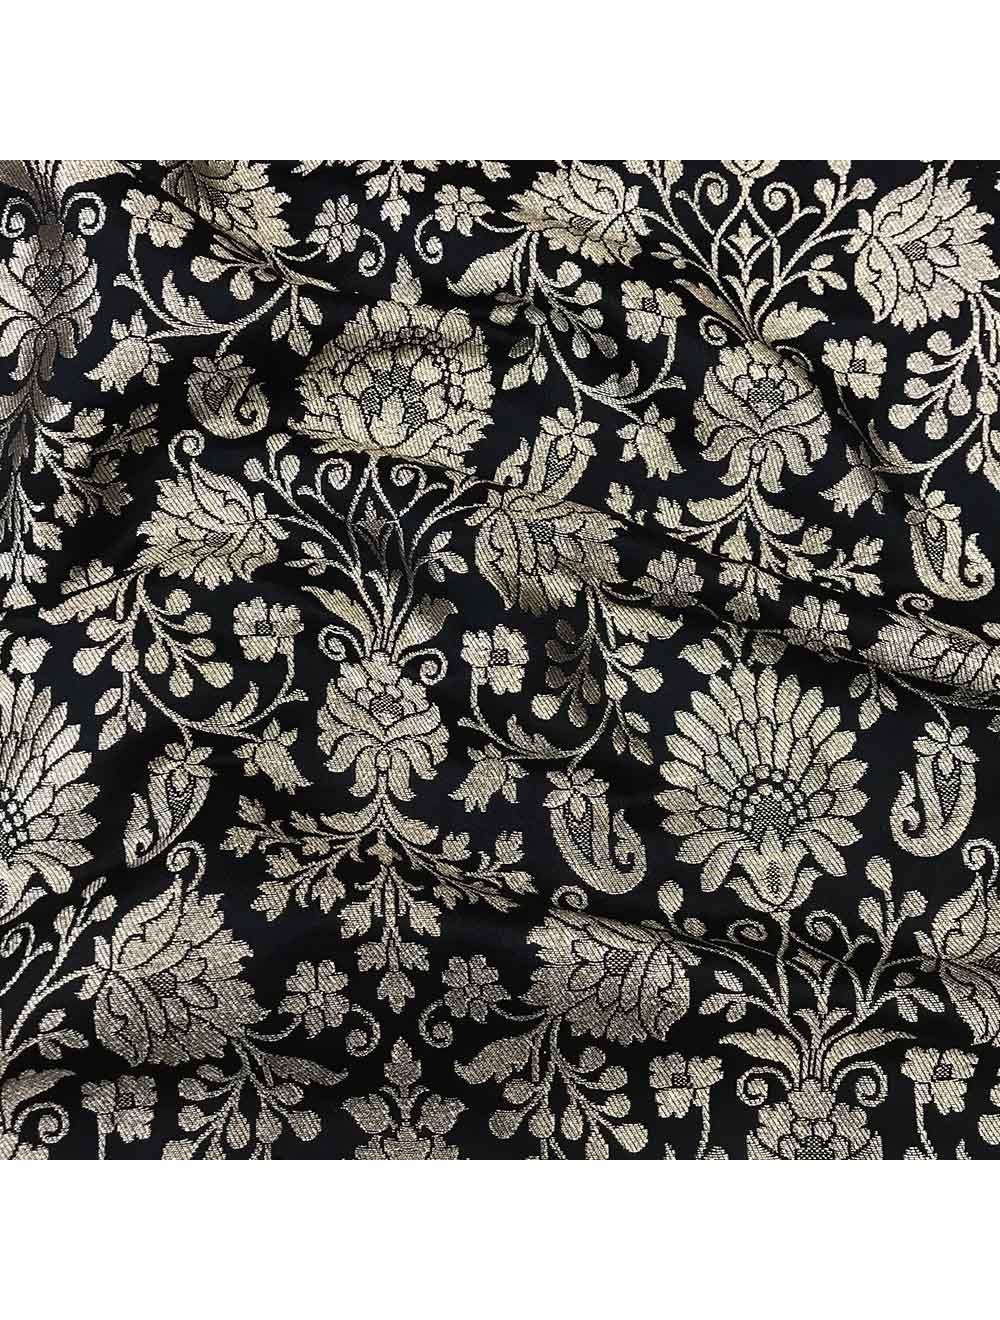 https://www.sarojfabrics.com/pub/media/catalog/product/cache/e461f6a7c3abe4058405e5b51e40efd3/s/f/sf40469-saroj-fabrics-banarasi-silk-fabric.jpg